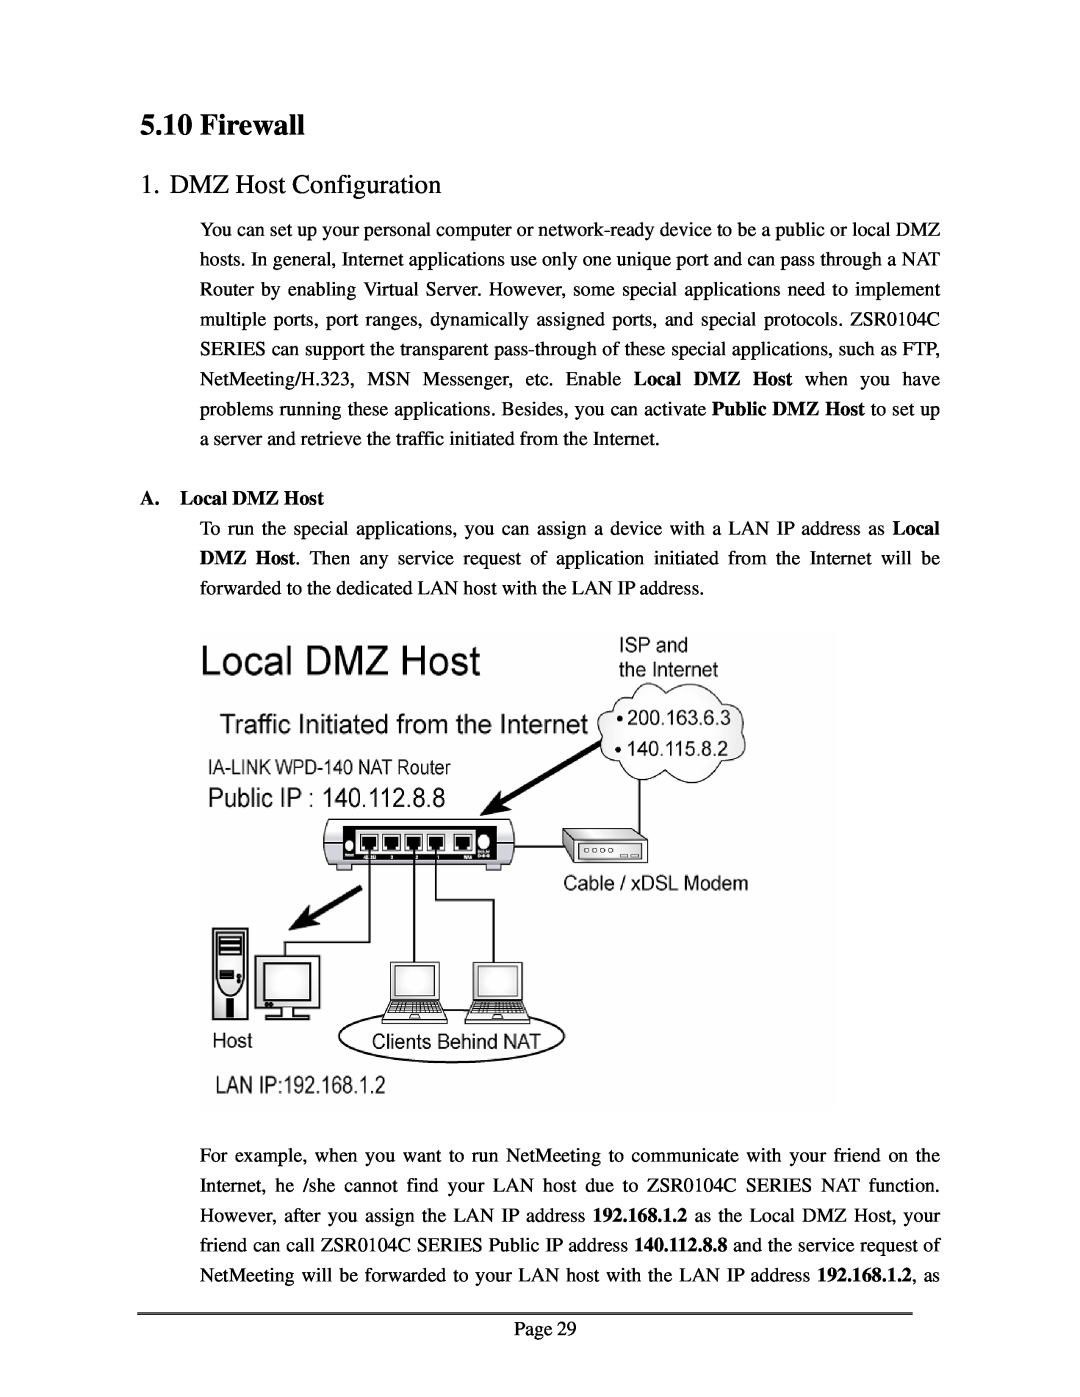 Zonet Technology ZSR0104C Series user manual Firewall, DMZ Host Configuration, A. Local DMZ Host 